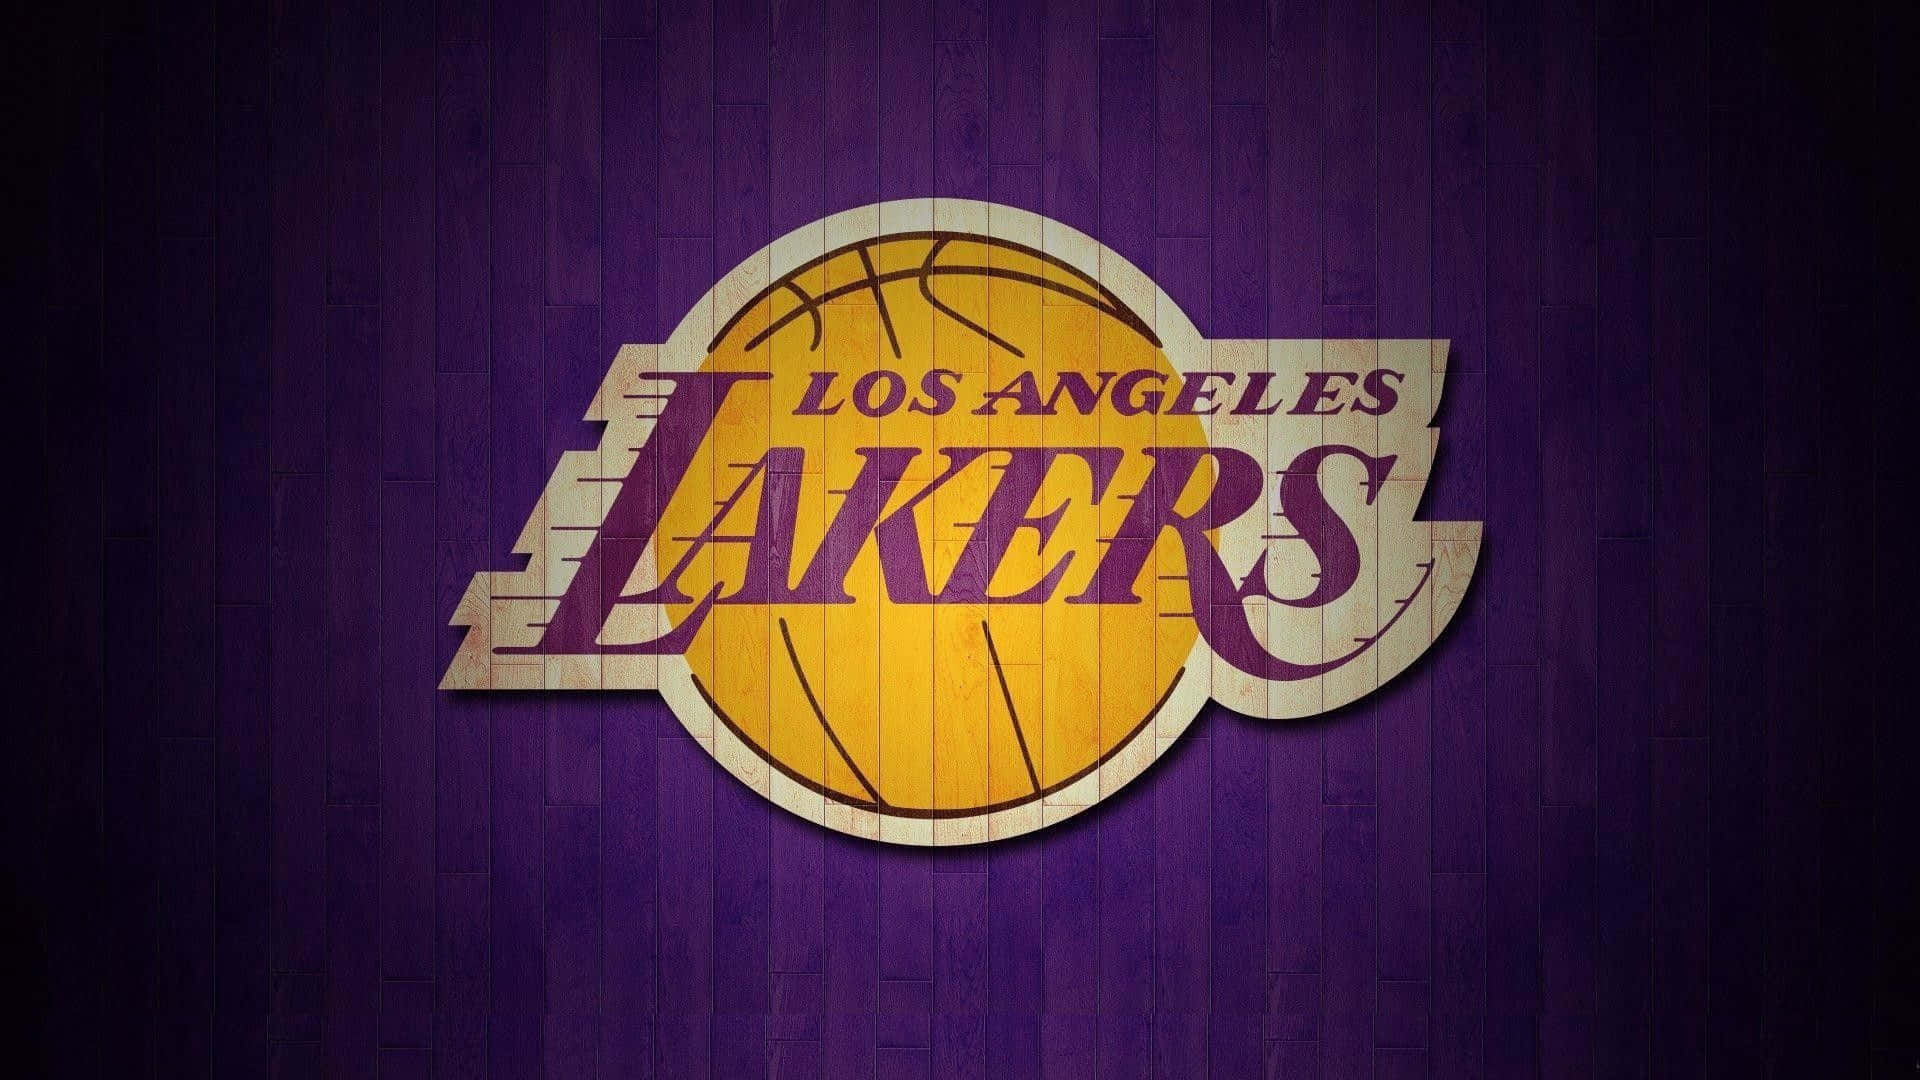 Losangeles Lakers Indtager Midten Af Banen.